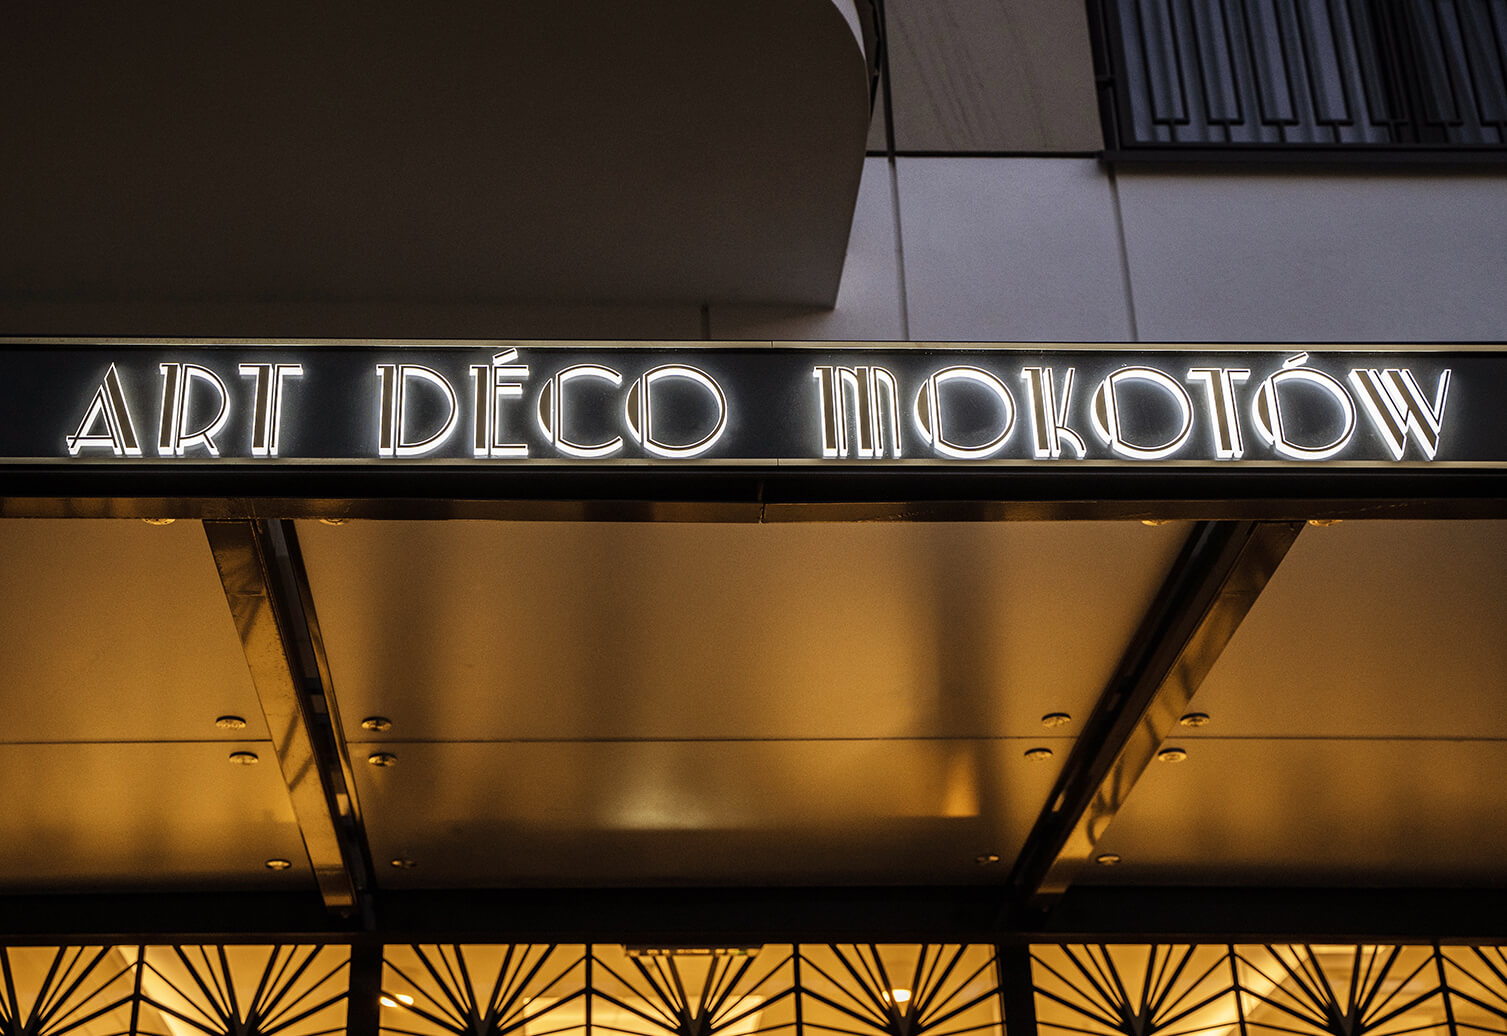 Art Deco Mokotow - Cassetta in dibond color oro sopra l'ingresso Art Deco di Mokotow, retroilluminata a LED.